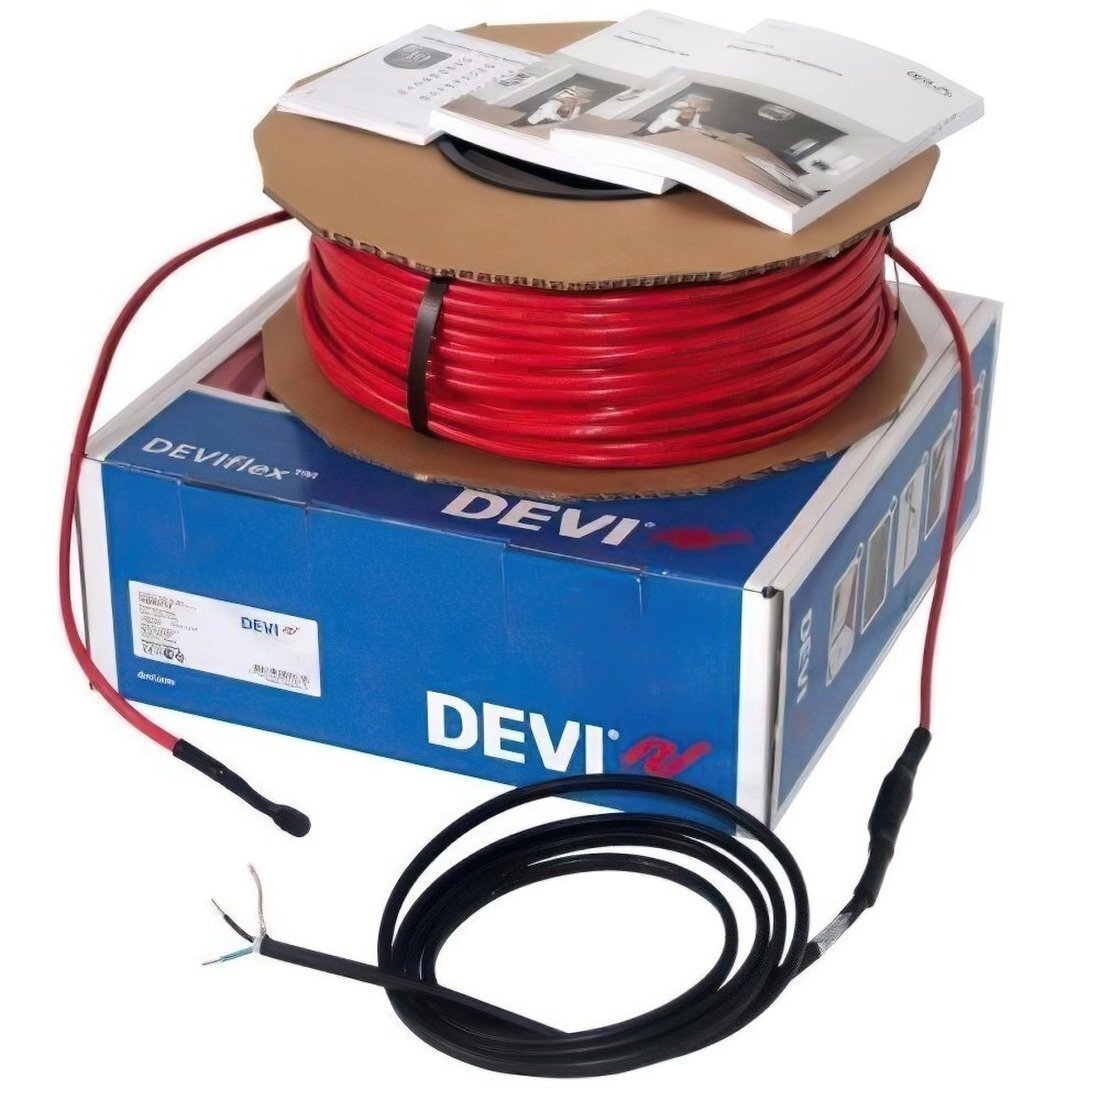 Теплый пол DEVI Flex двухжильный нагревательный кабель 18T, 1340 Вт, 230V, 74м (140F1246) фото 1